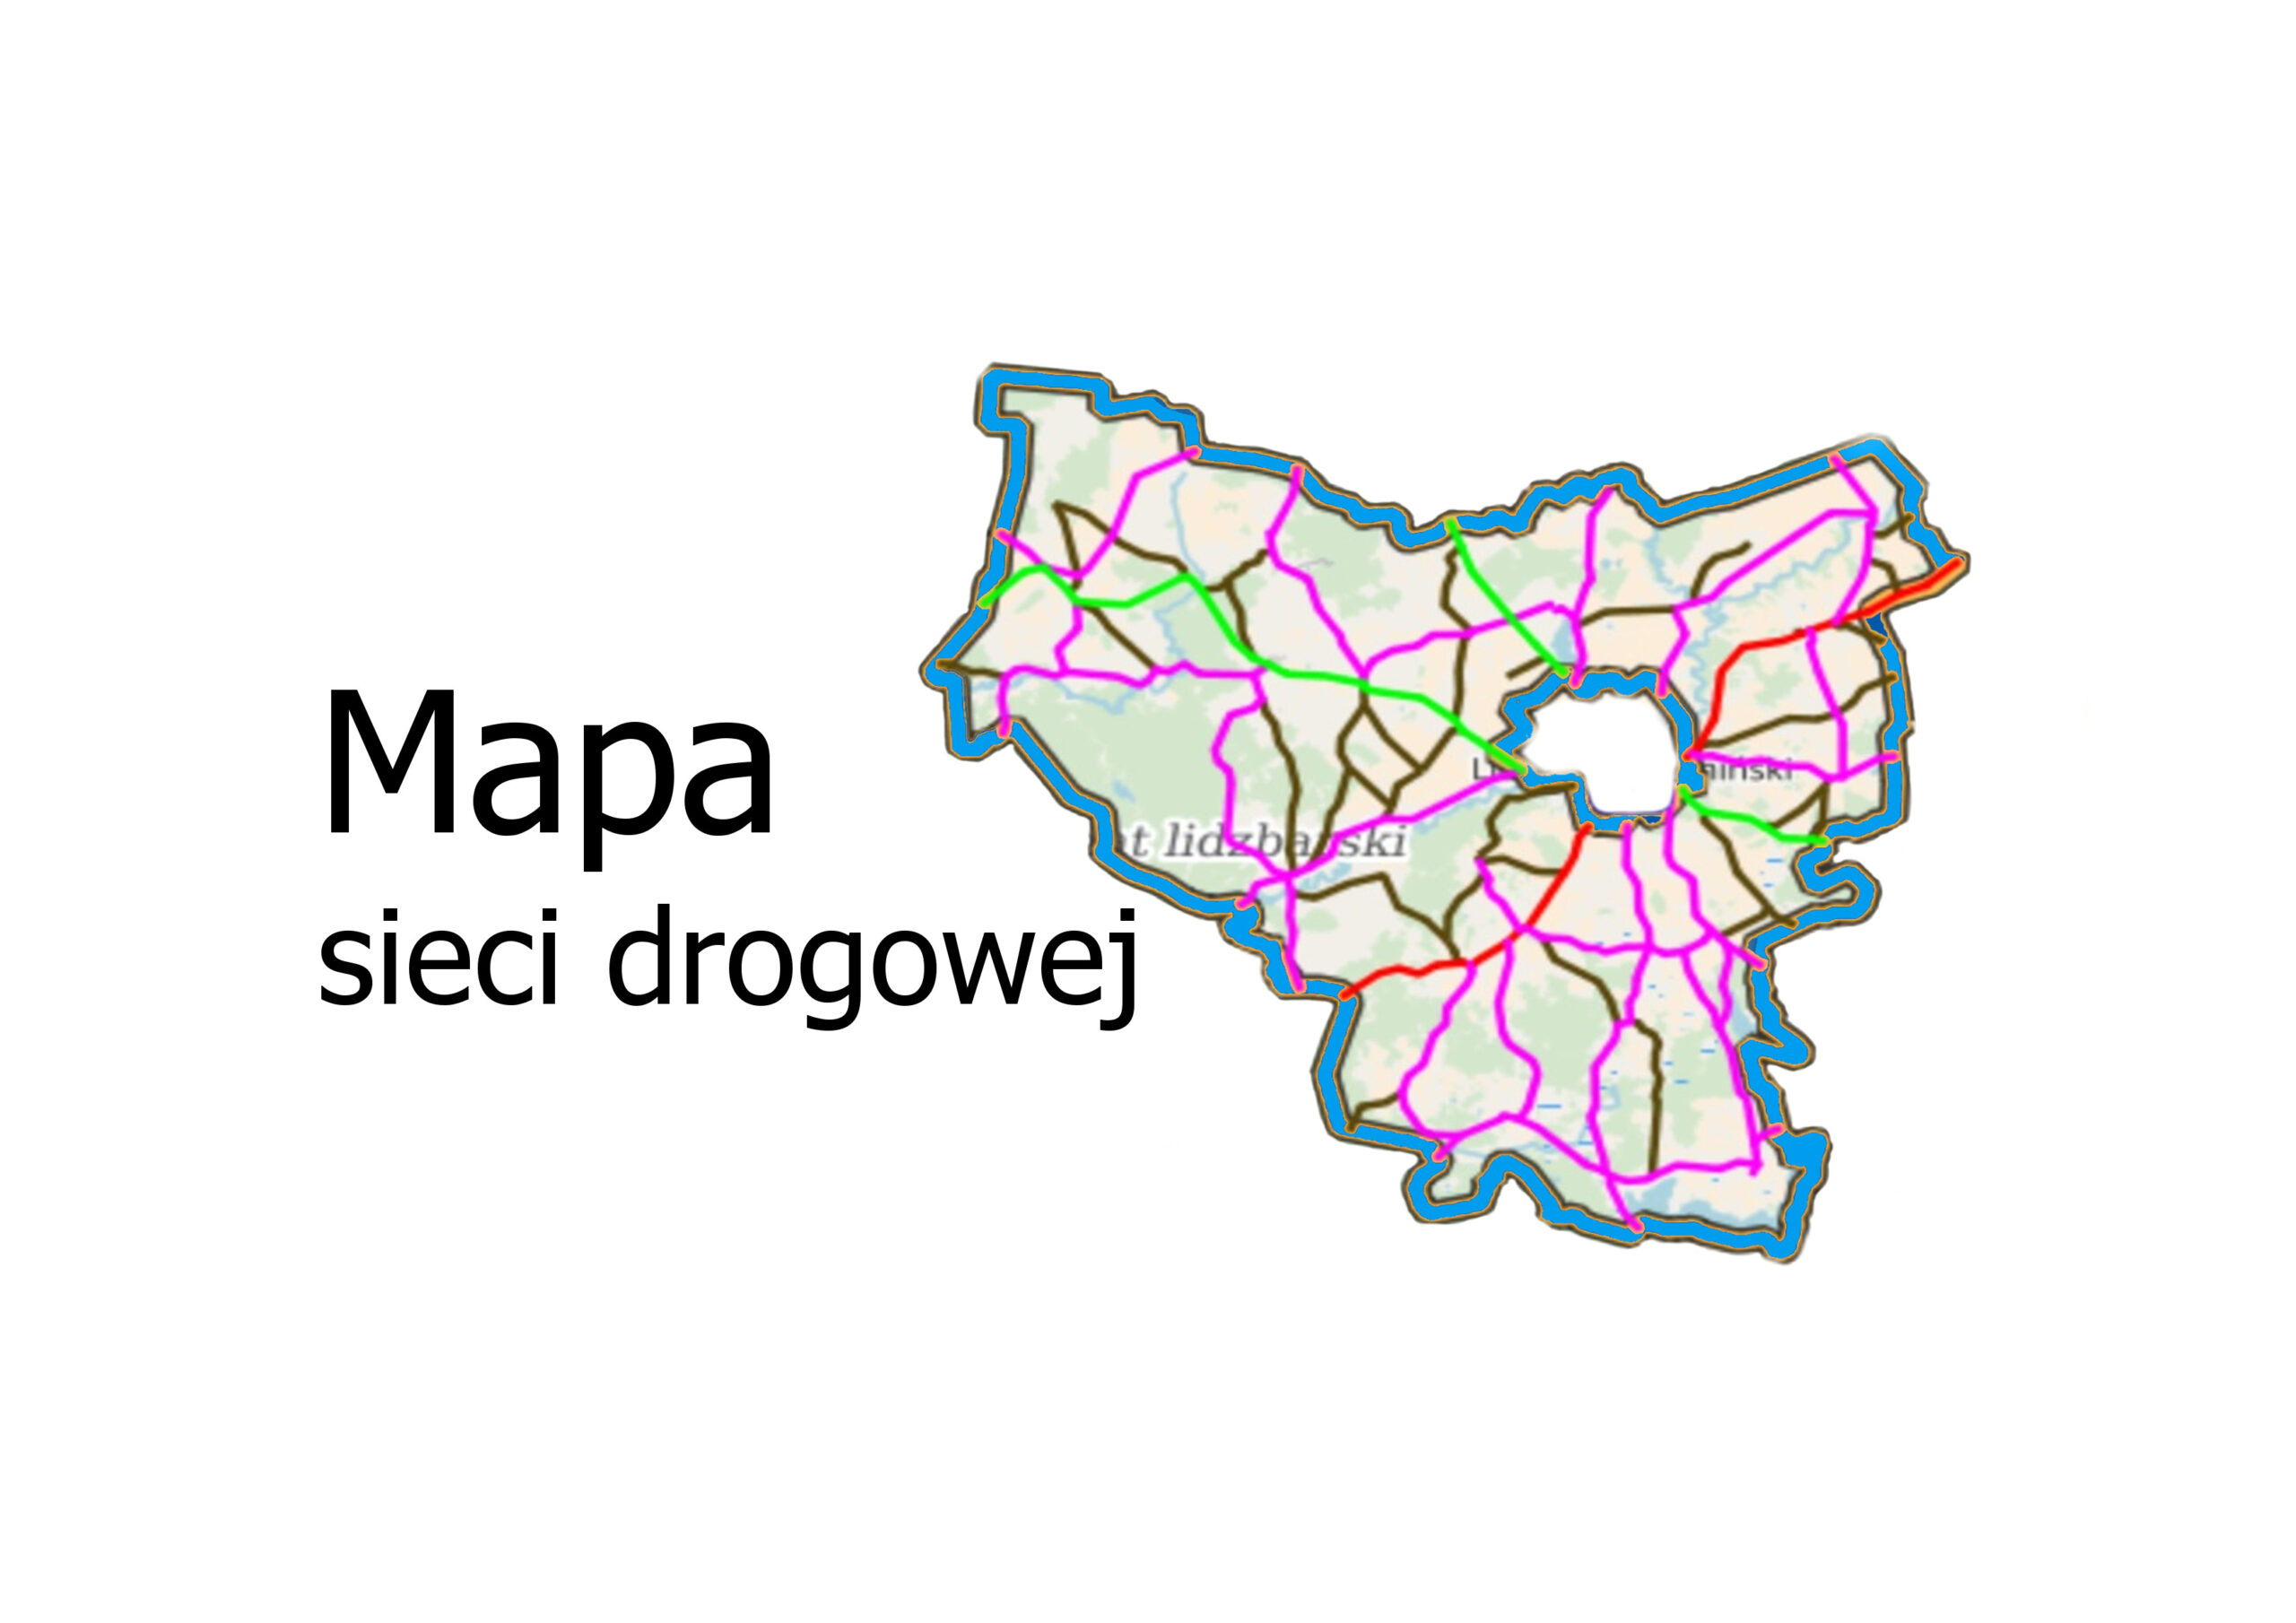 Baner z napisem Mapa sieci drogowej